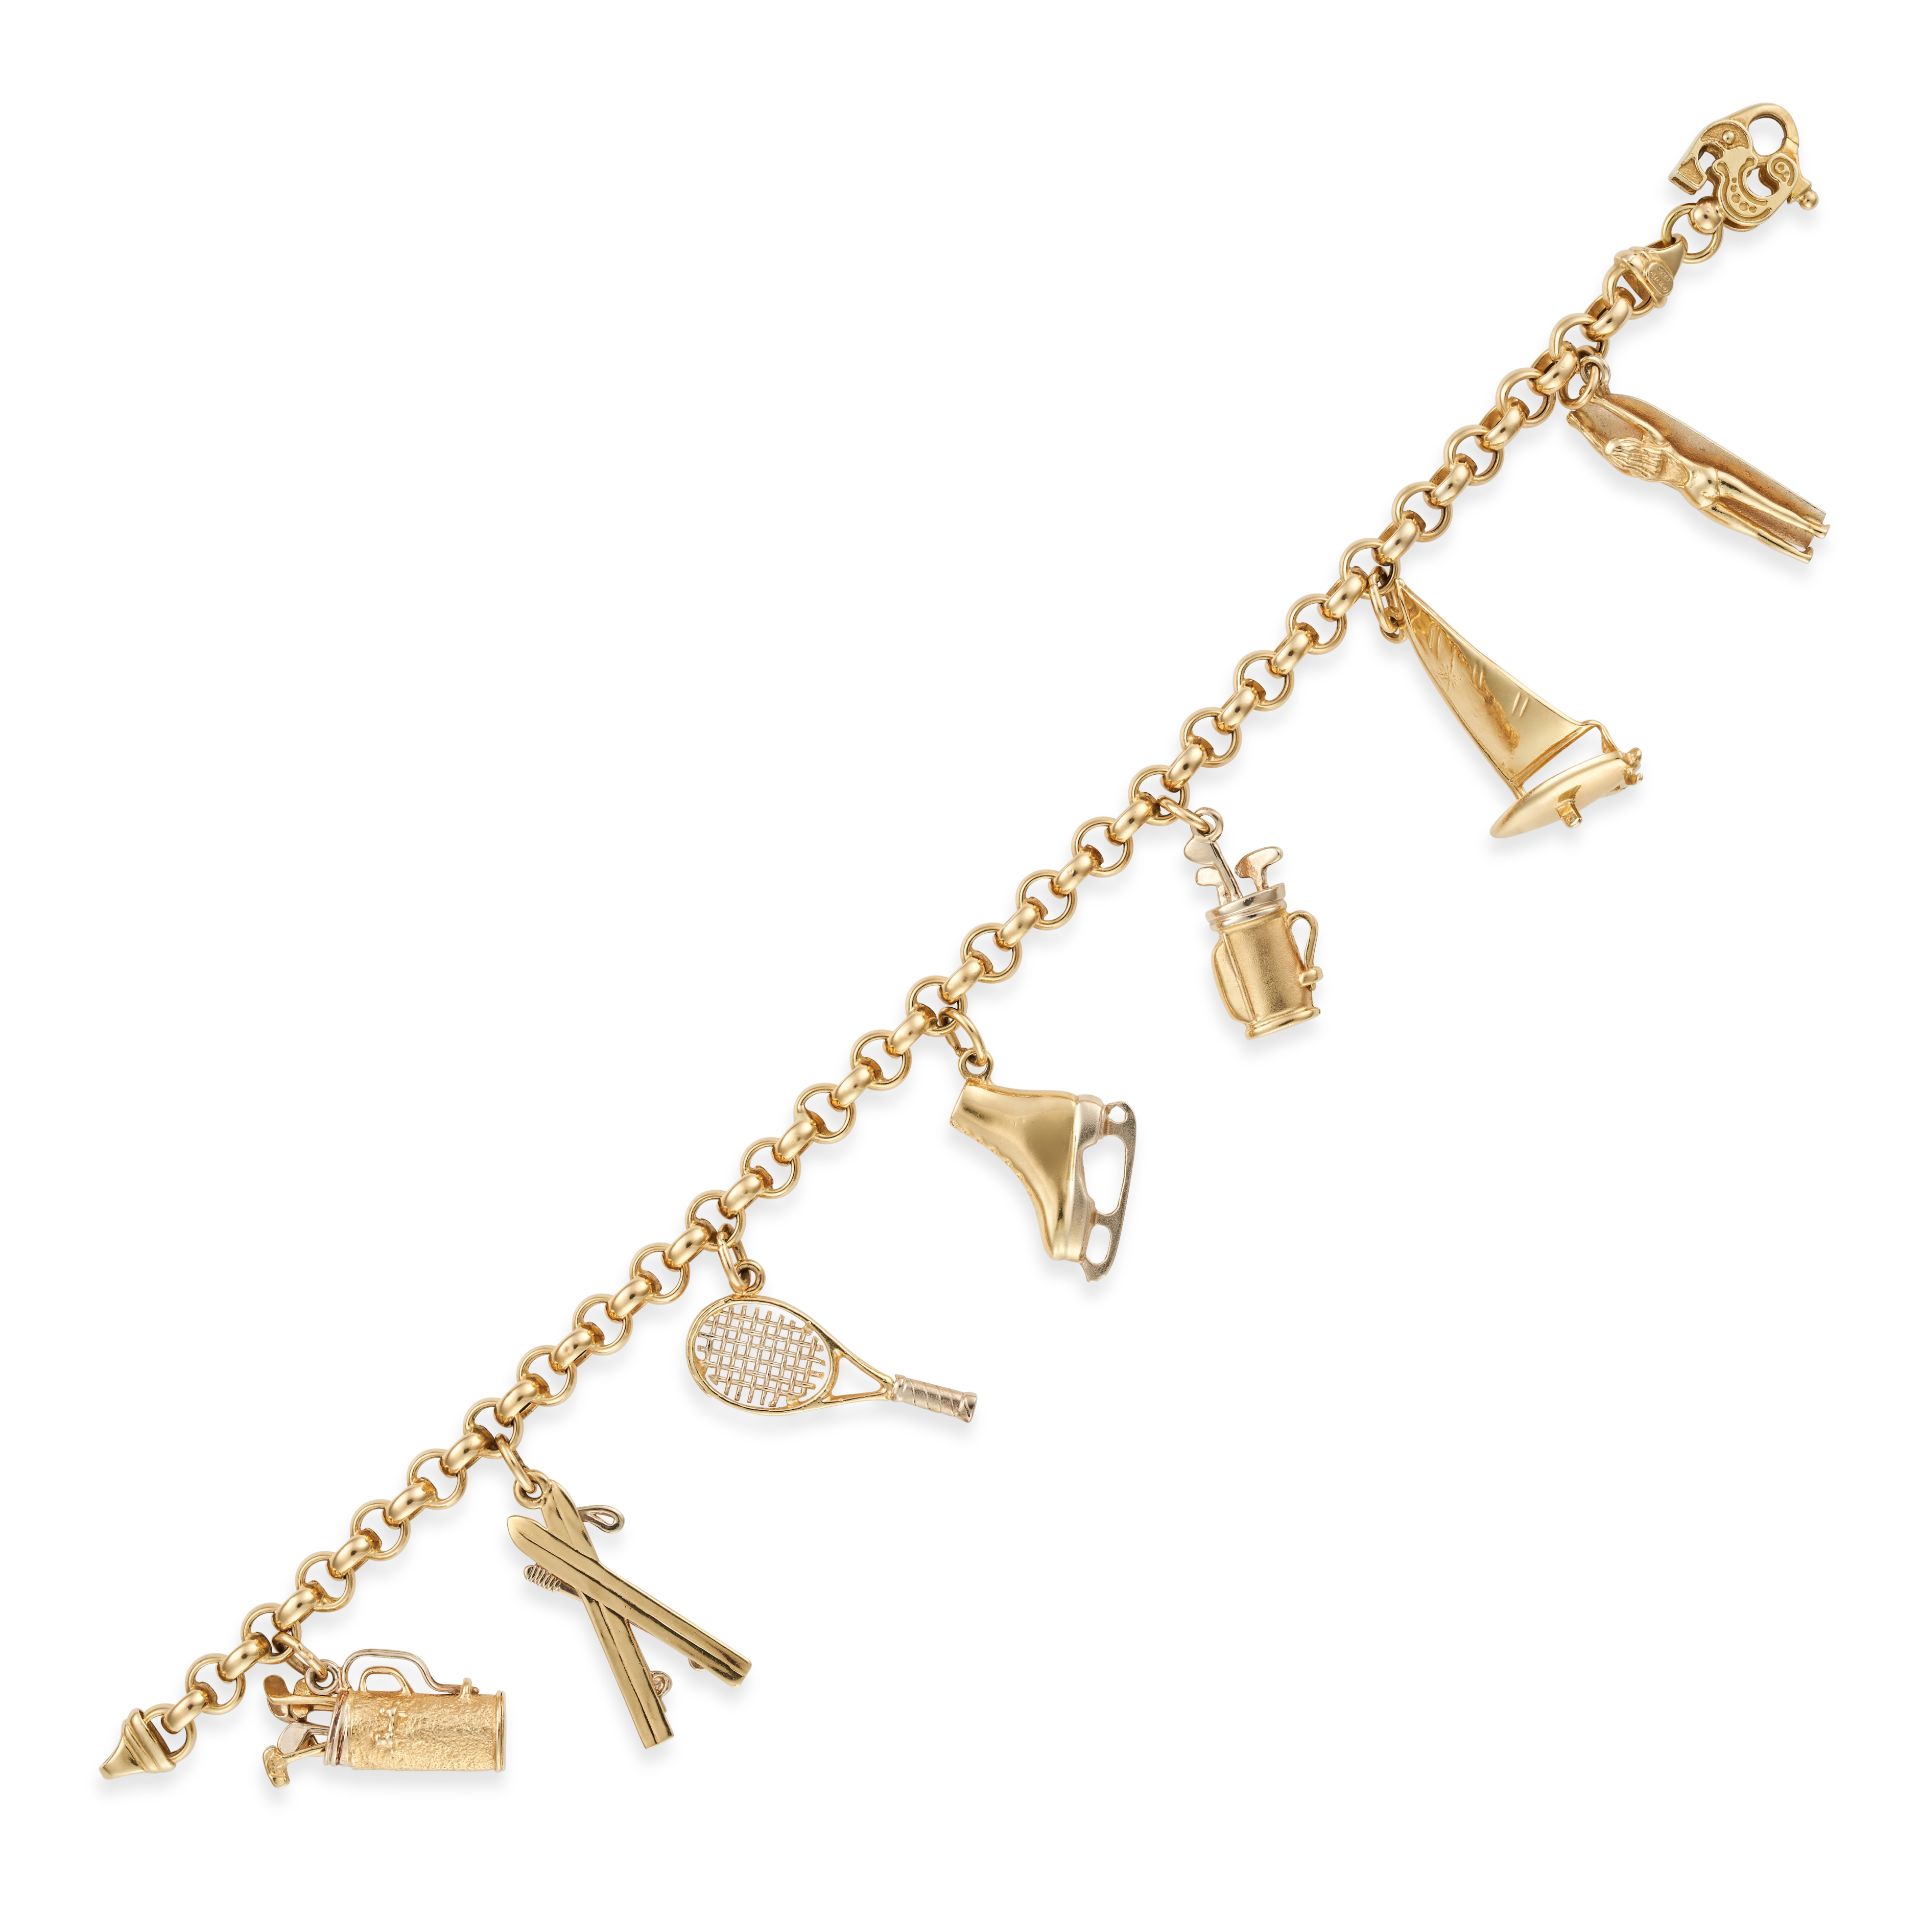 A CHARM BRACELET comprising a belcher chain bracelet, suspending seven charm pendants including a...